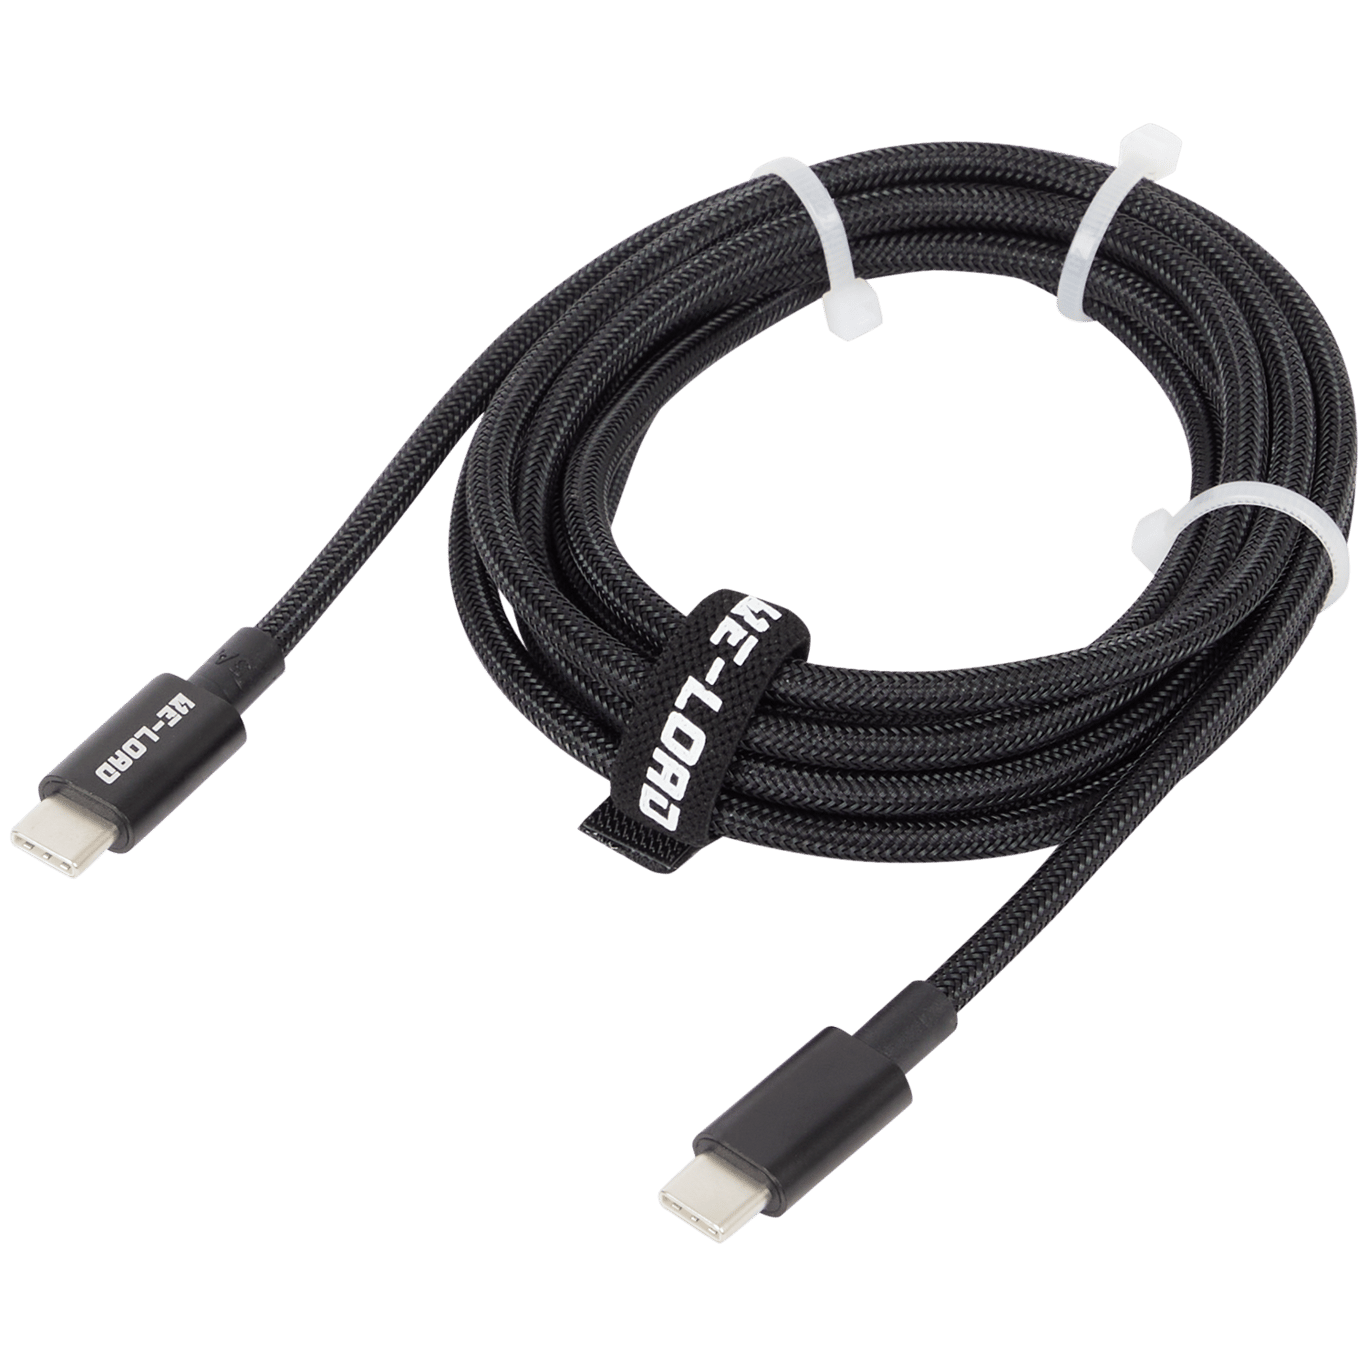 Reusachtig peddelen Zwembad Re-load USB-C-kabel | Action.com